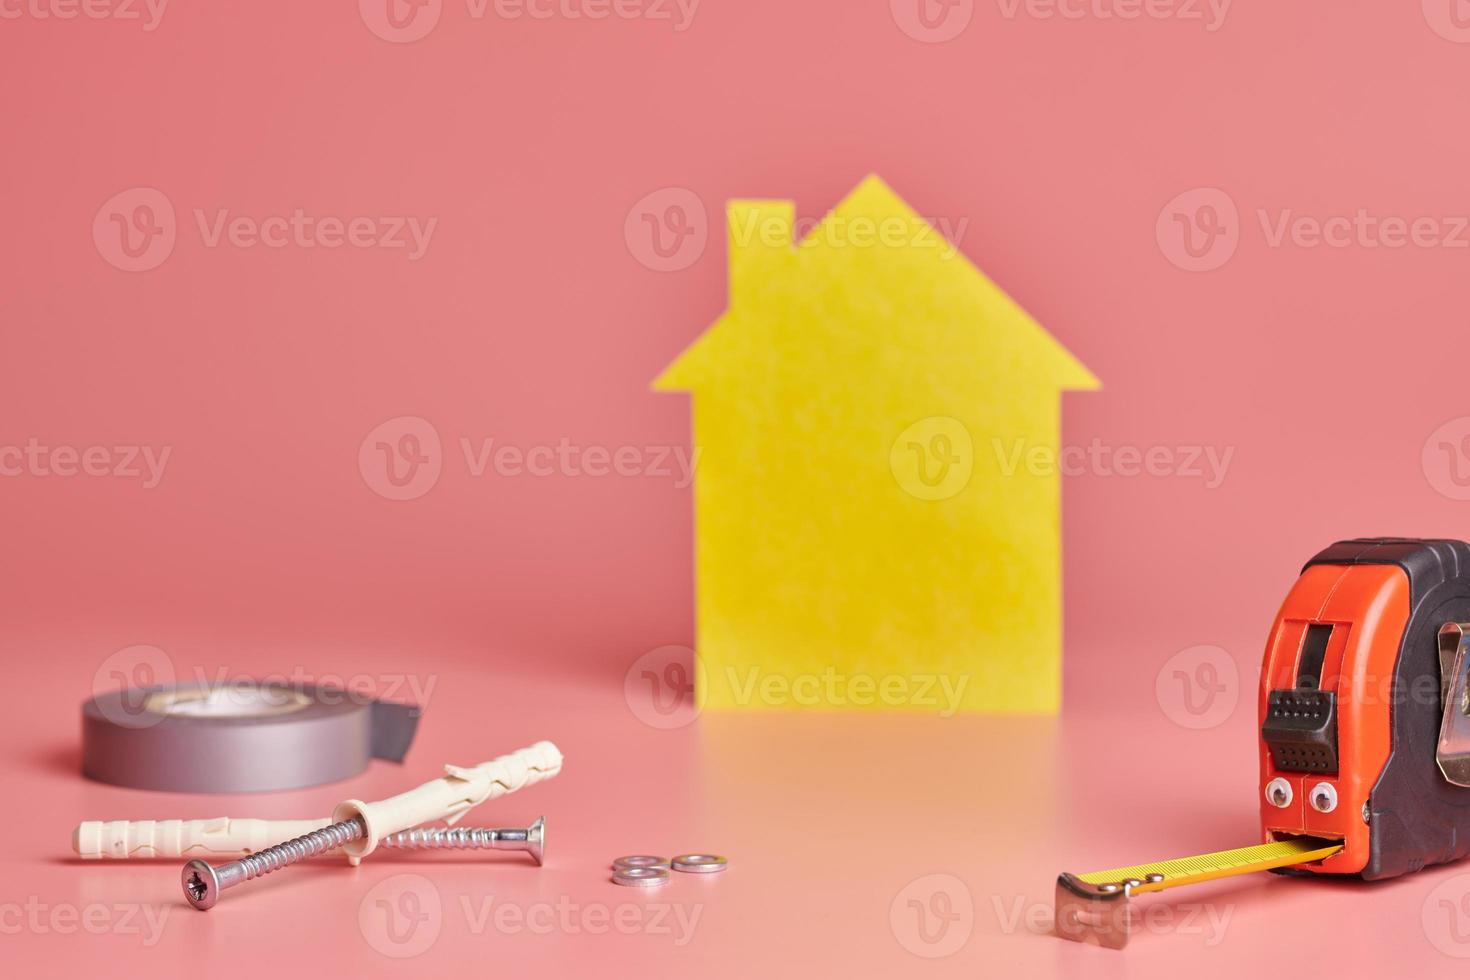 Metallbandmaß lustiges Konzept. Hausrenovierung. hausreparatur und neu gestaltetes konzept. gelbe hausförmige figur auf rosa hintergrund. foto